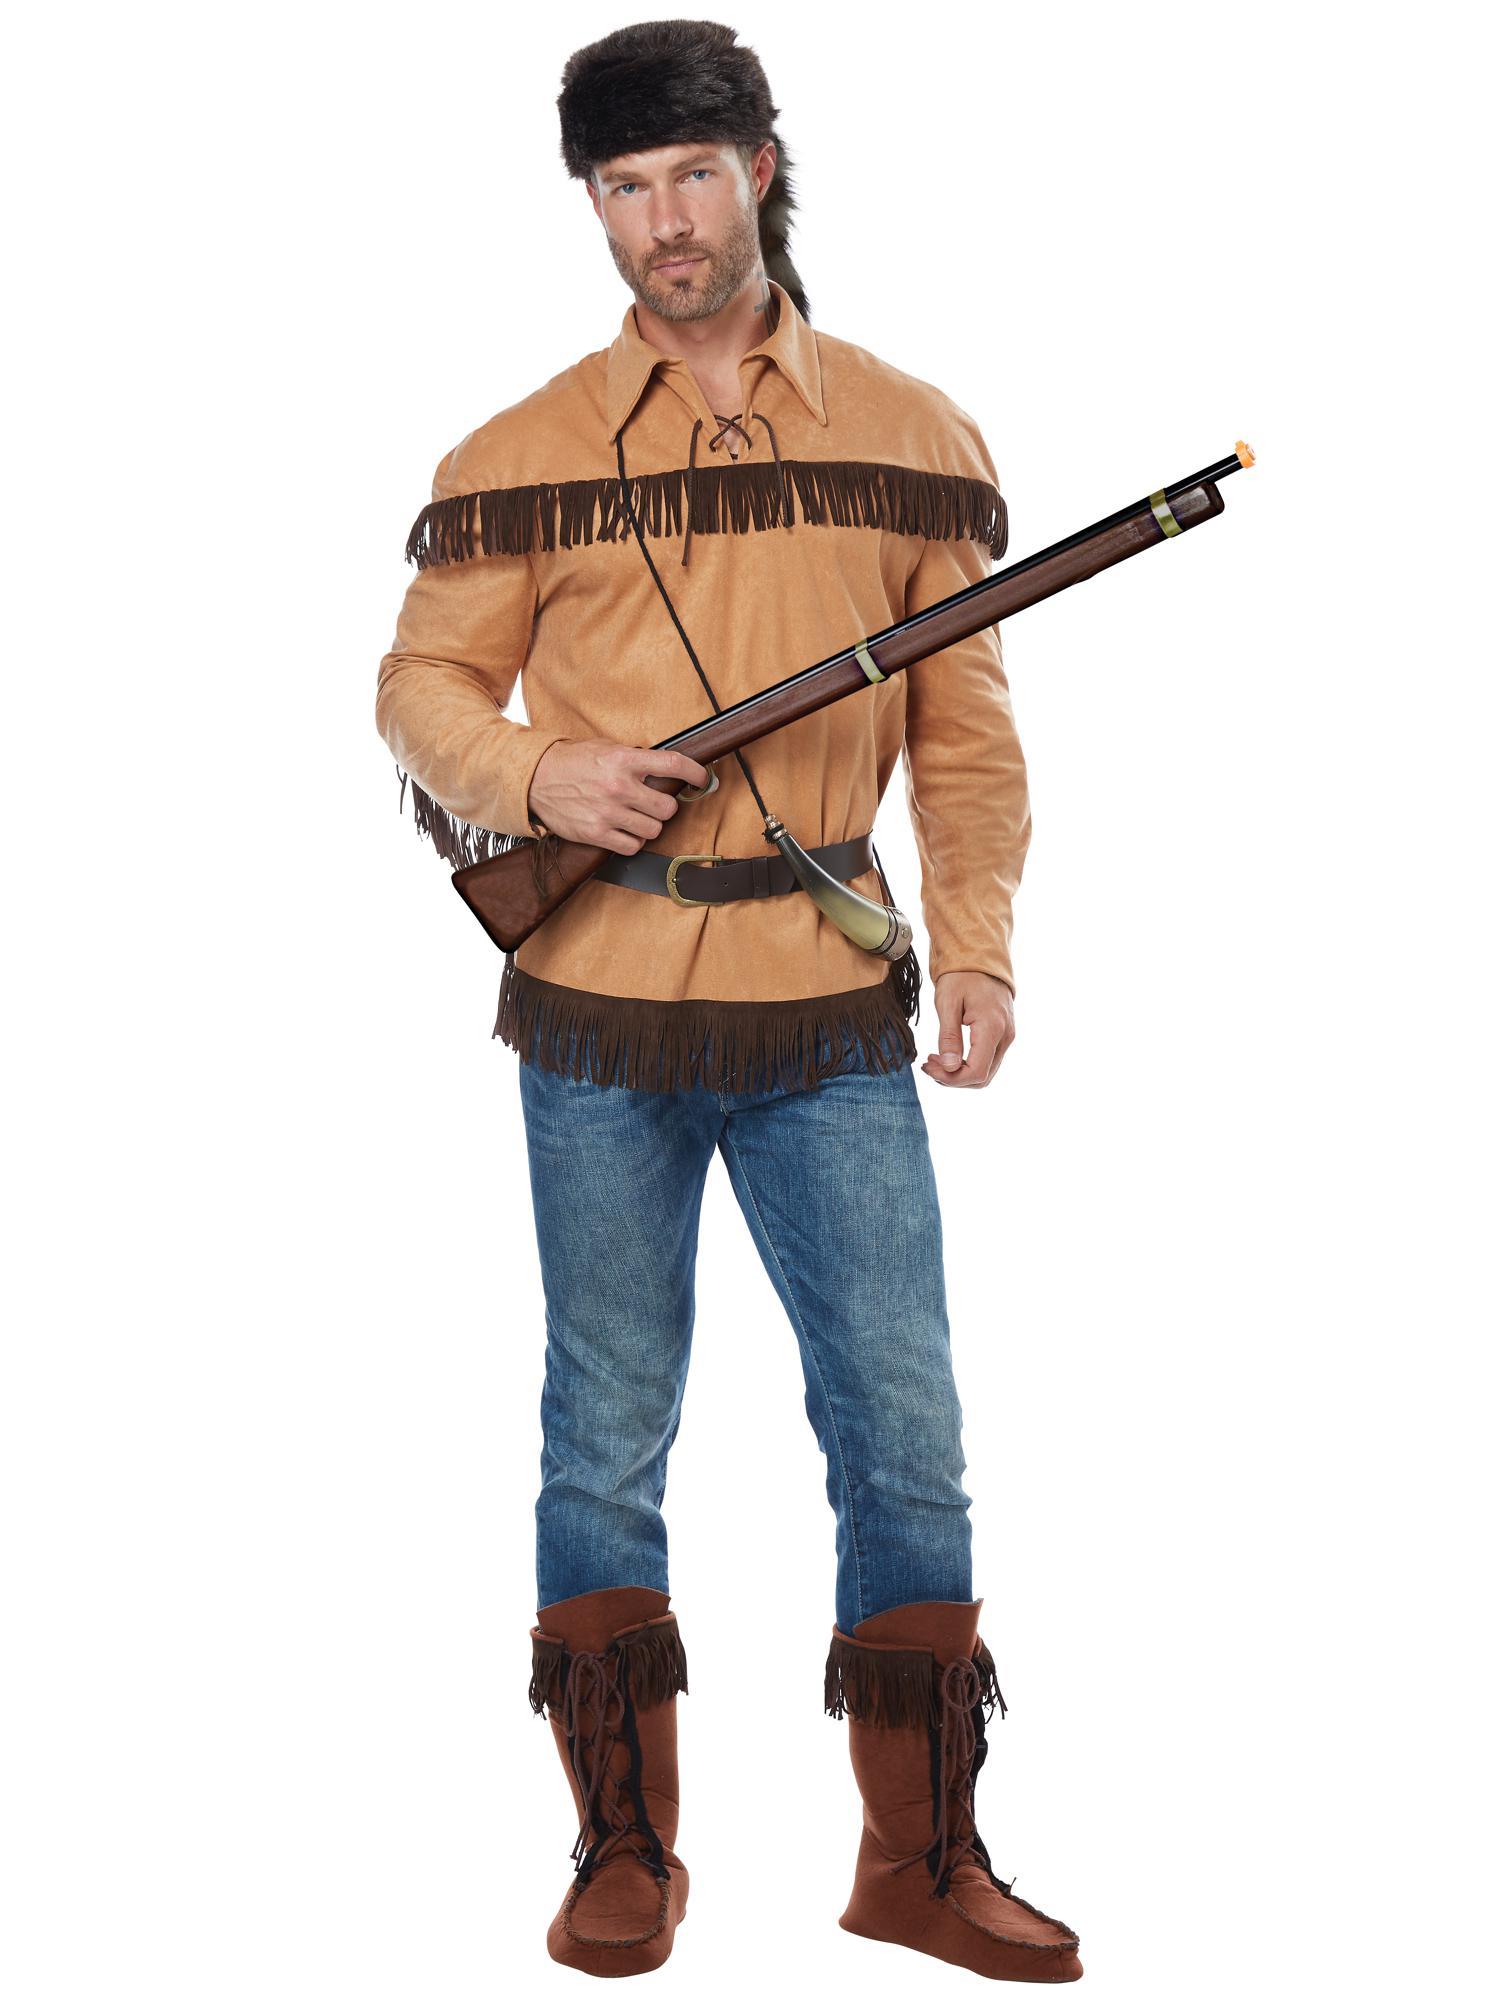 Frontier Man Davy Crockett Pioneers American Political Patriotic Mens Costume